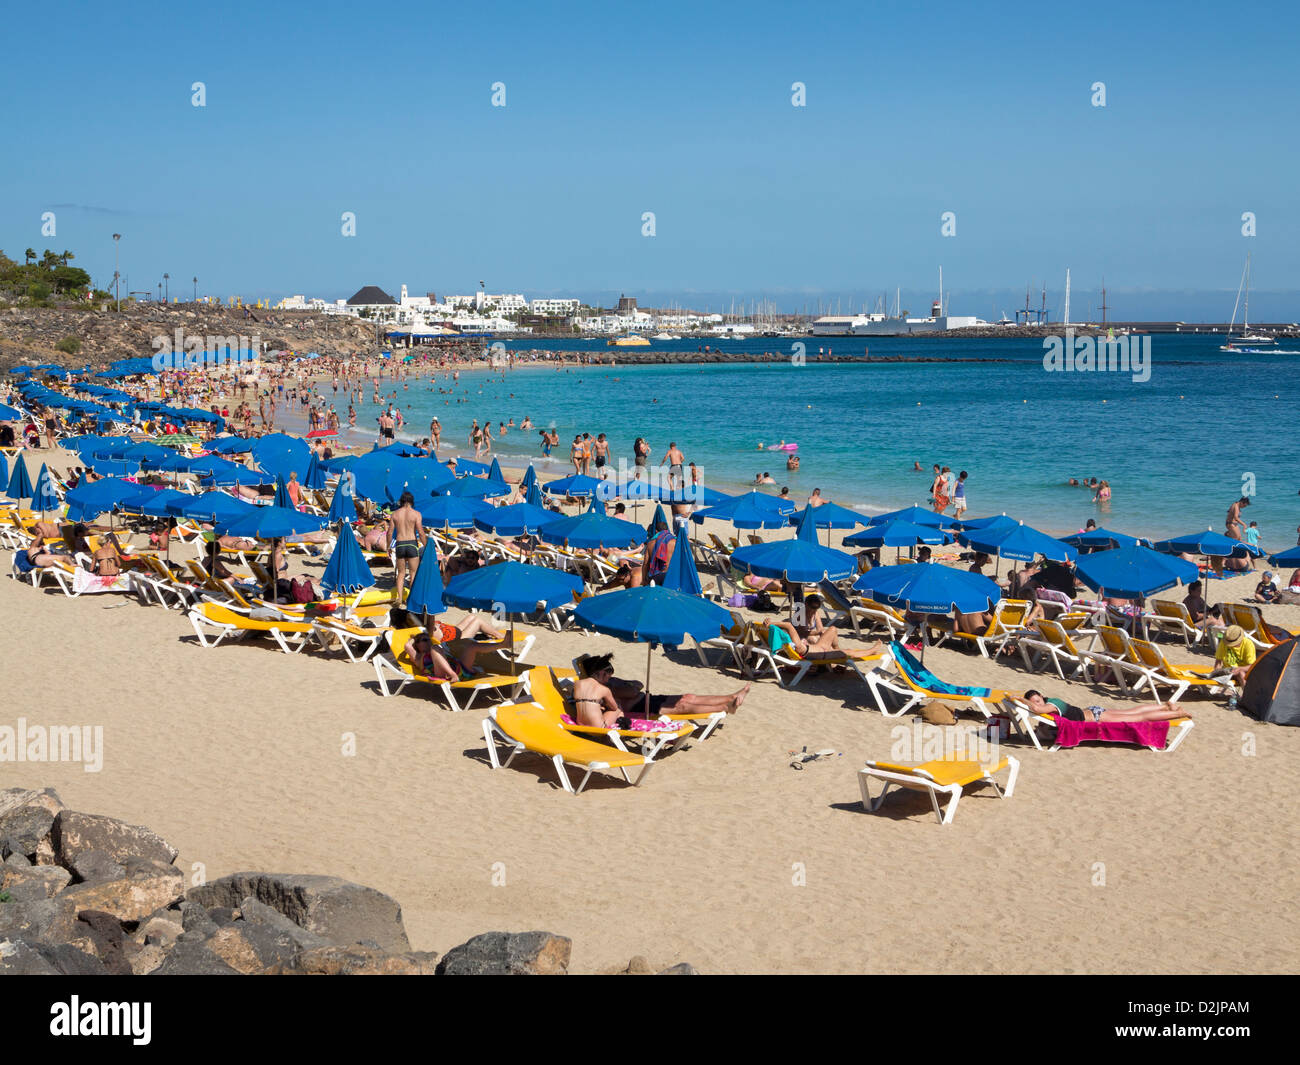 La plage de Playa Dorada, Playa Blanca, Lanzarote Banque D'Images